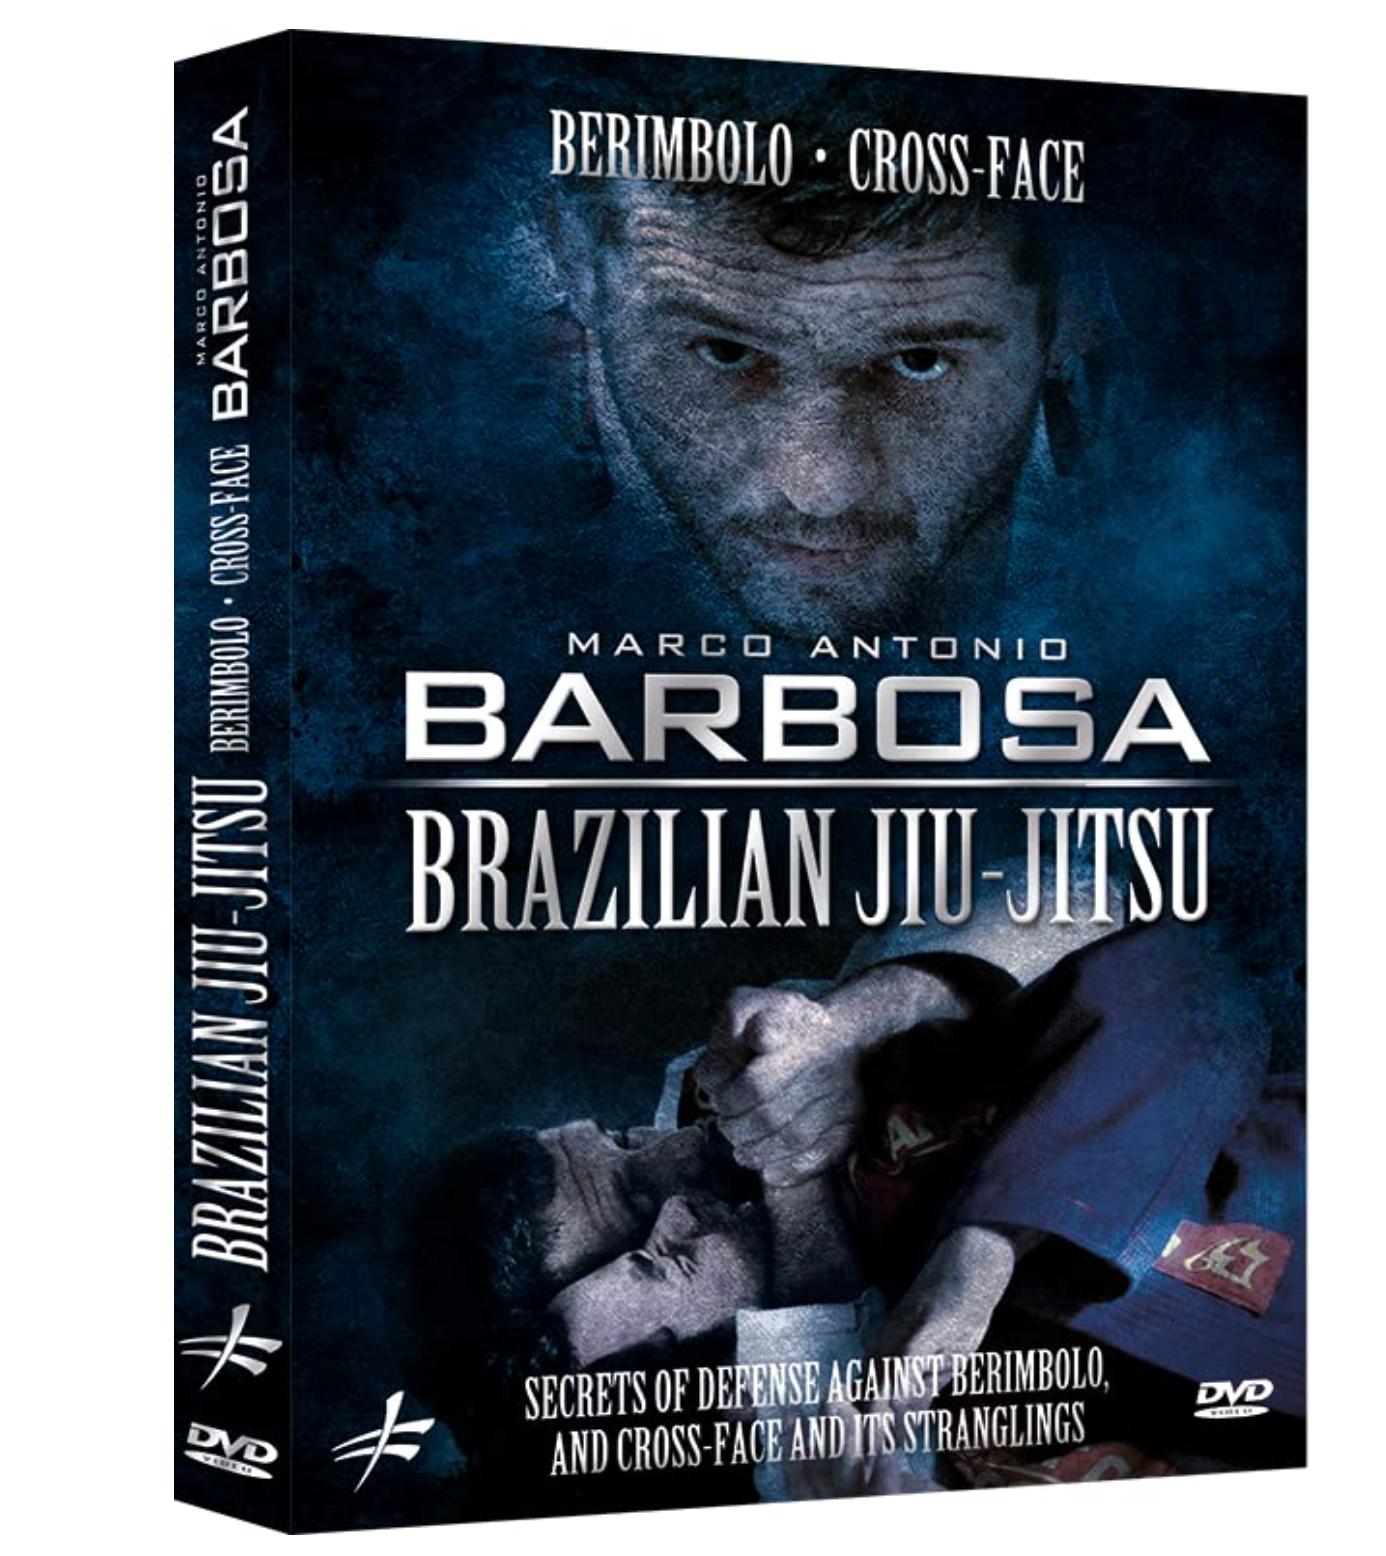 DVD Berimbolo y Cross Face Secretos y estrategias de Marco Antonio Barbosa 